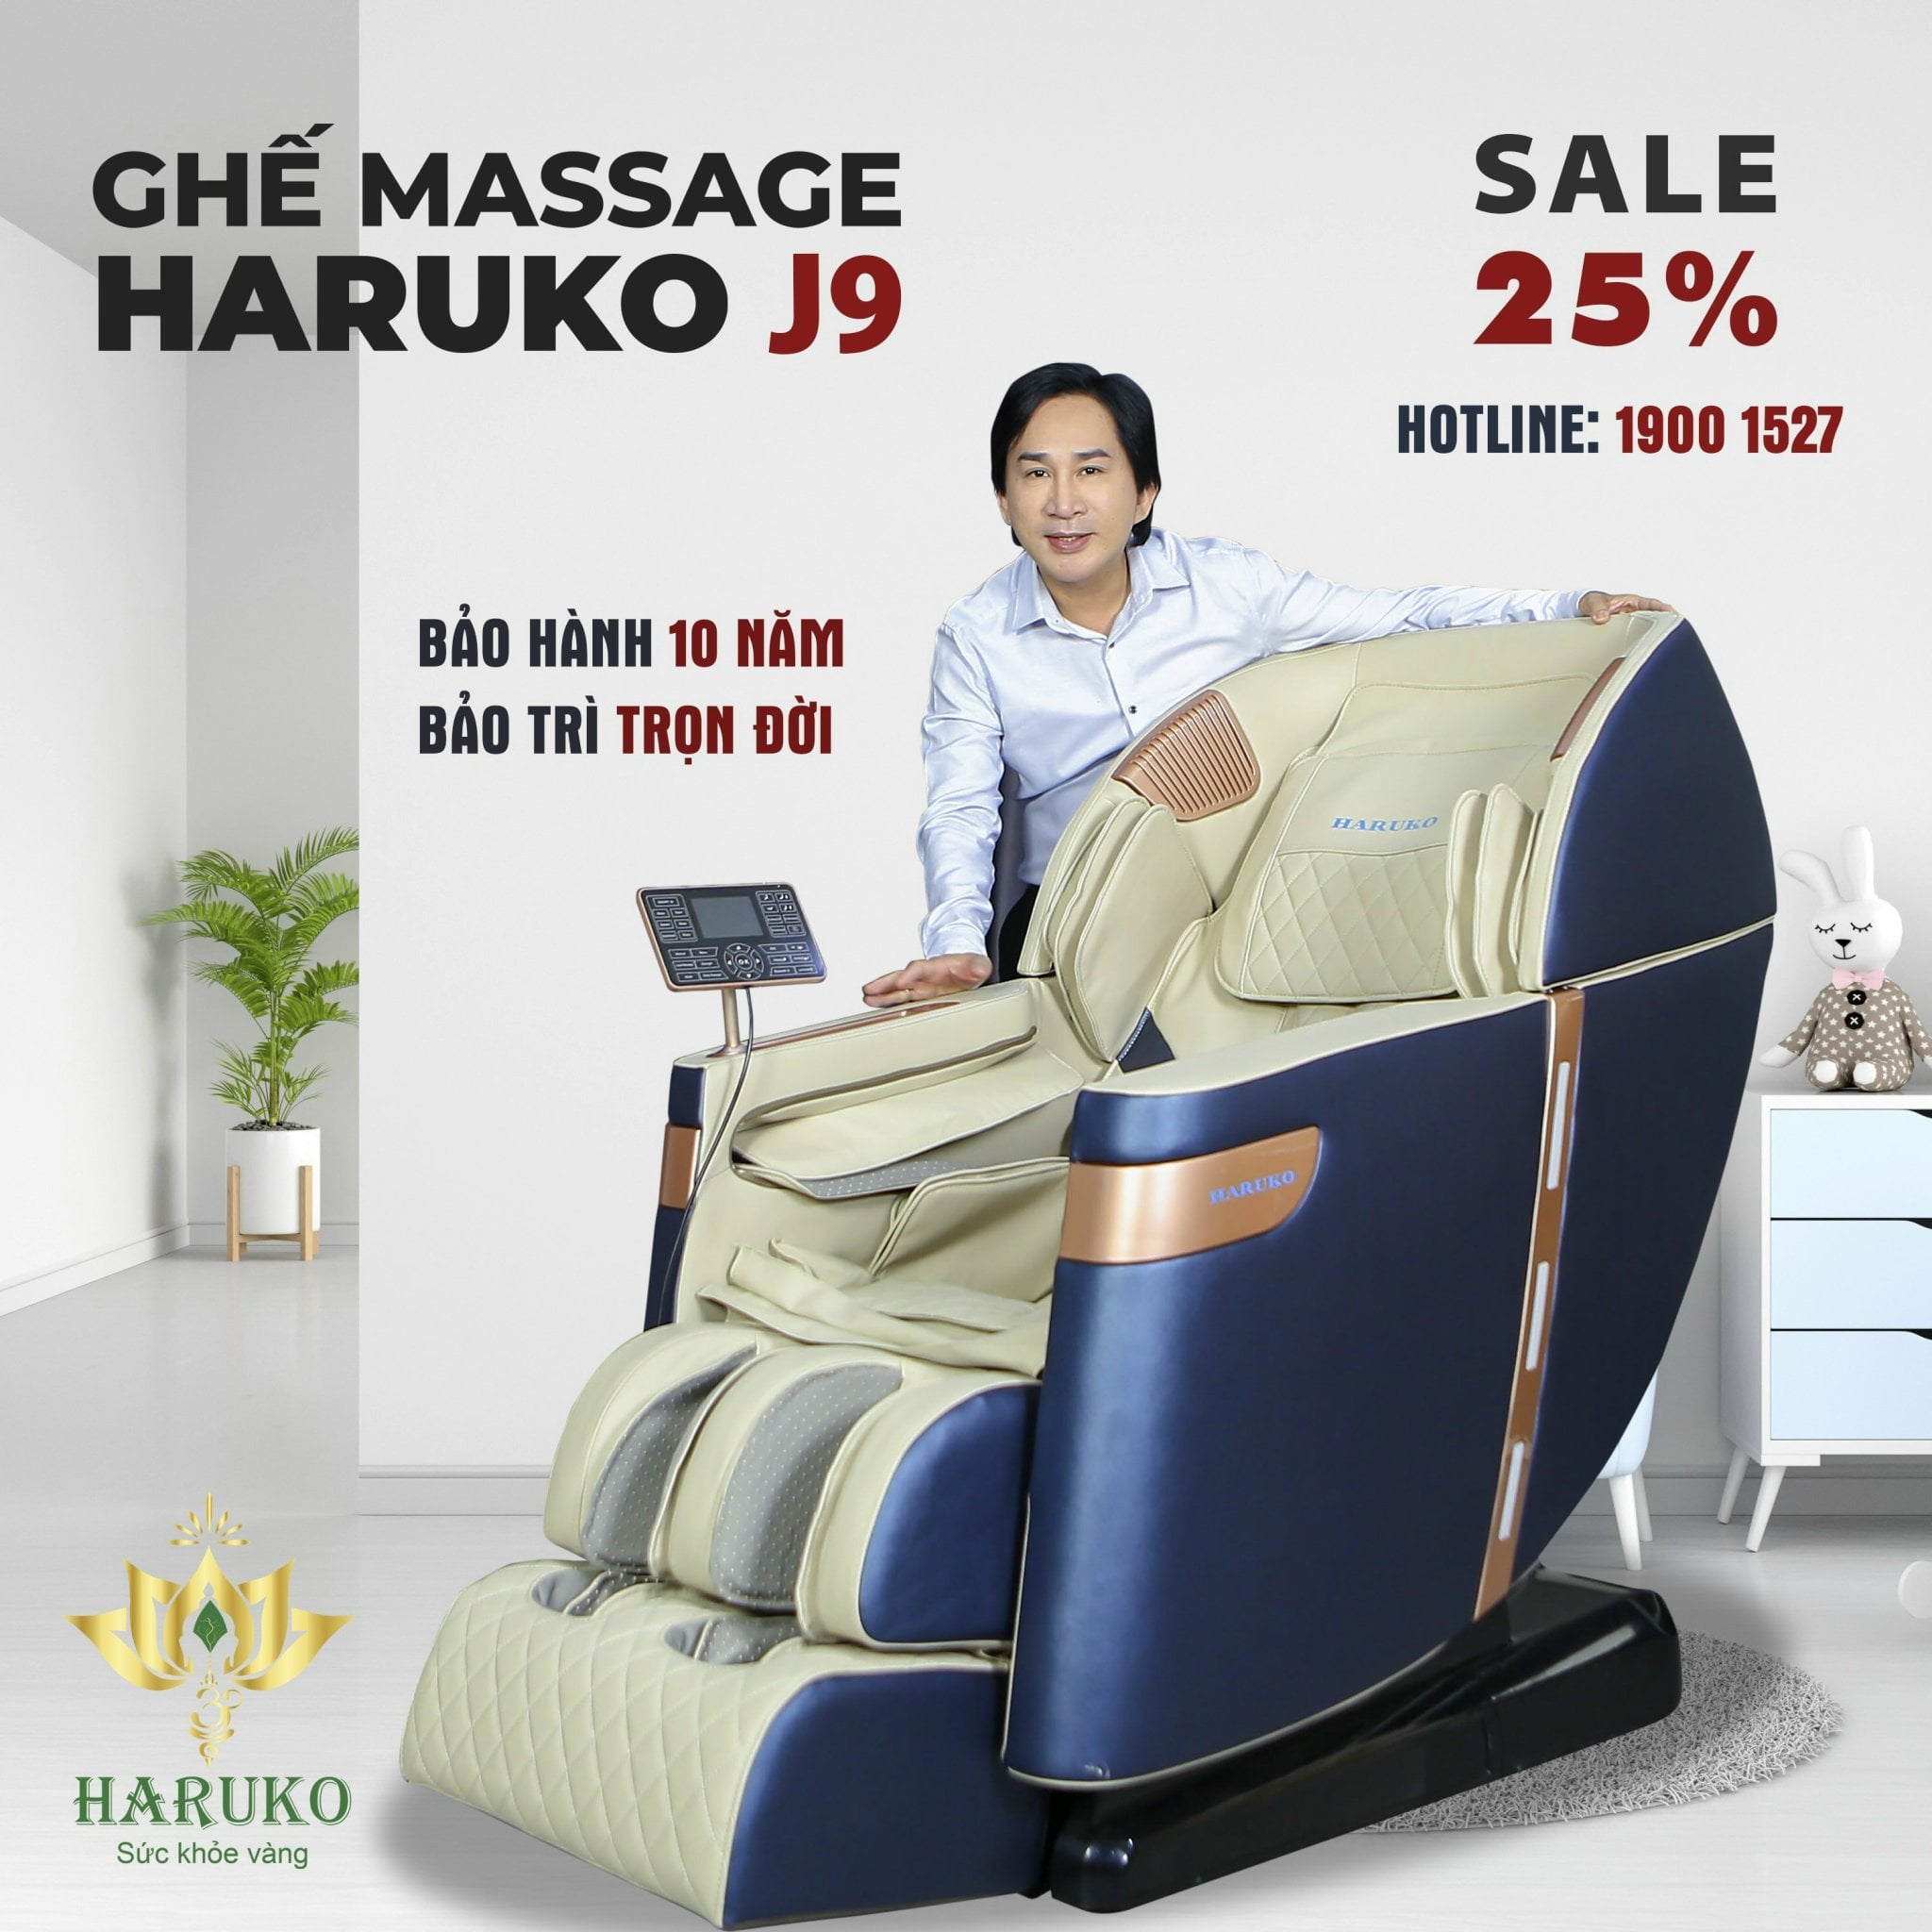 Ghế massage Haruko-J9 được lập trình giúp tăng khả năng lưu thông máu tốt hơn cho người sử dụng 